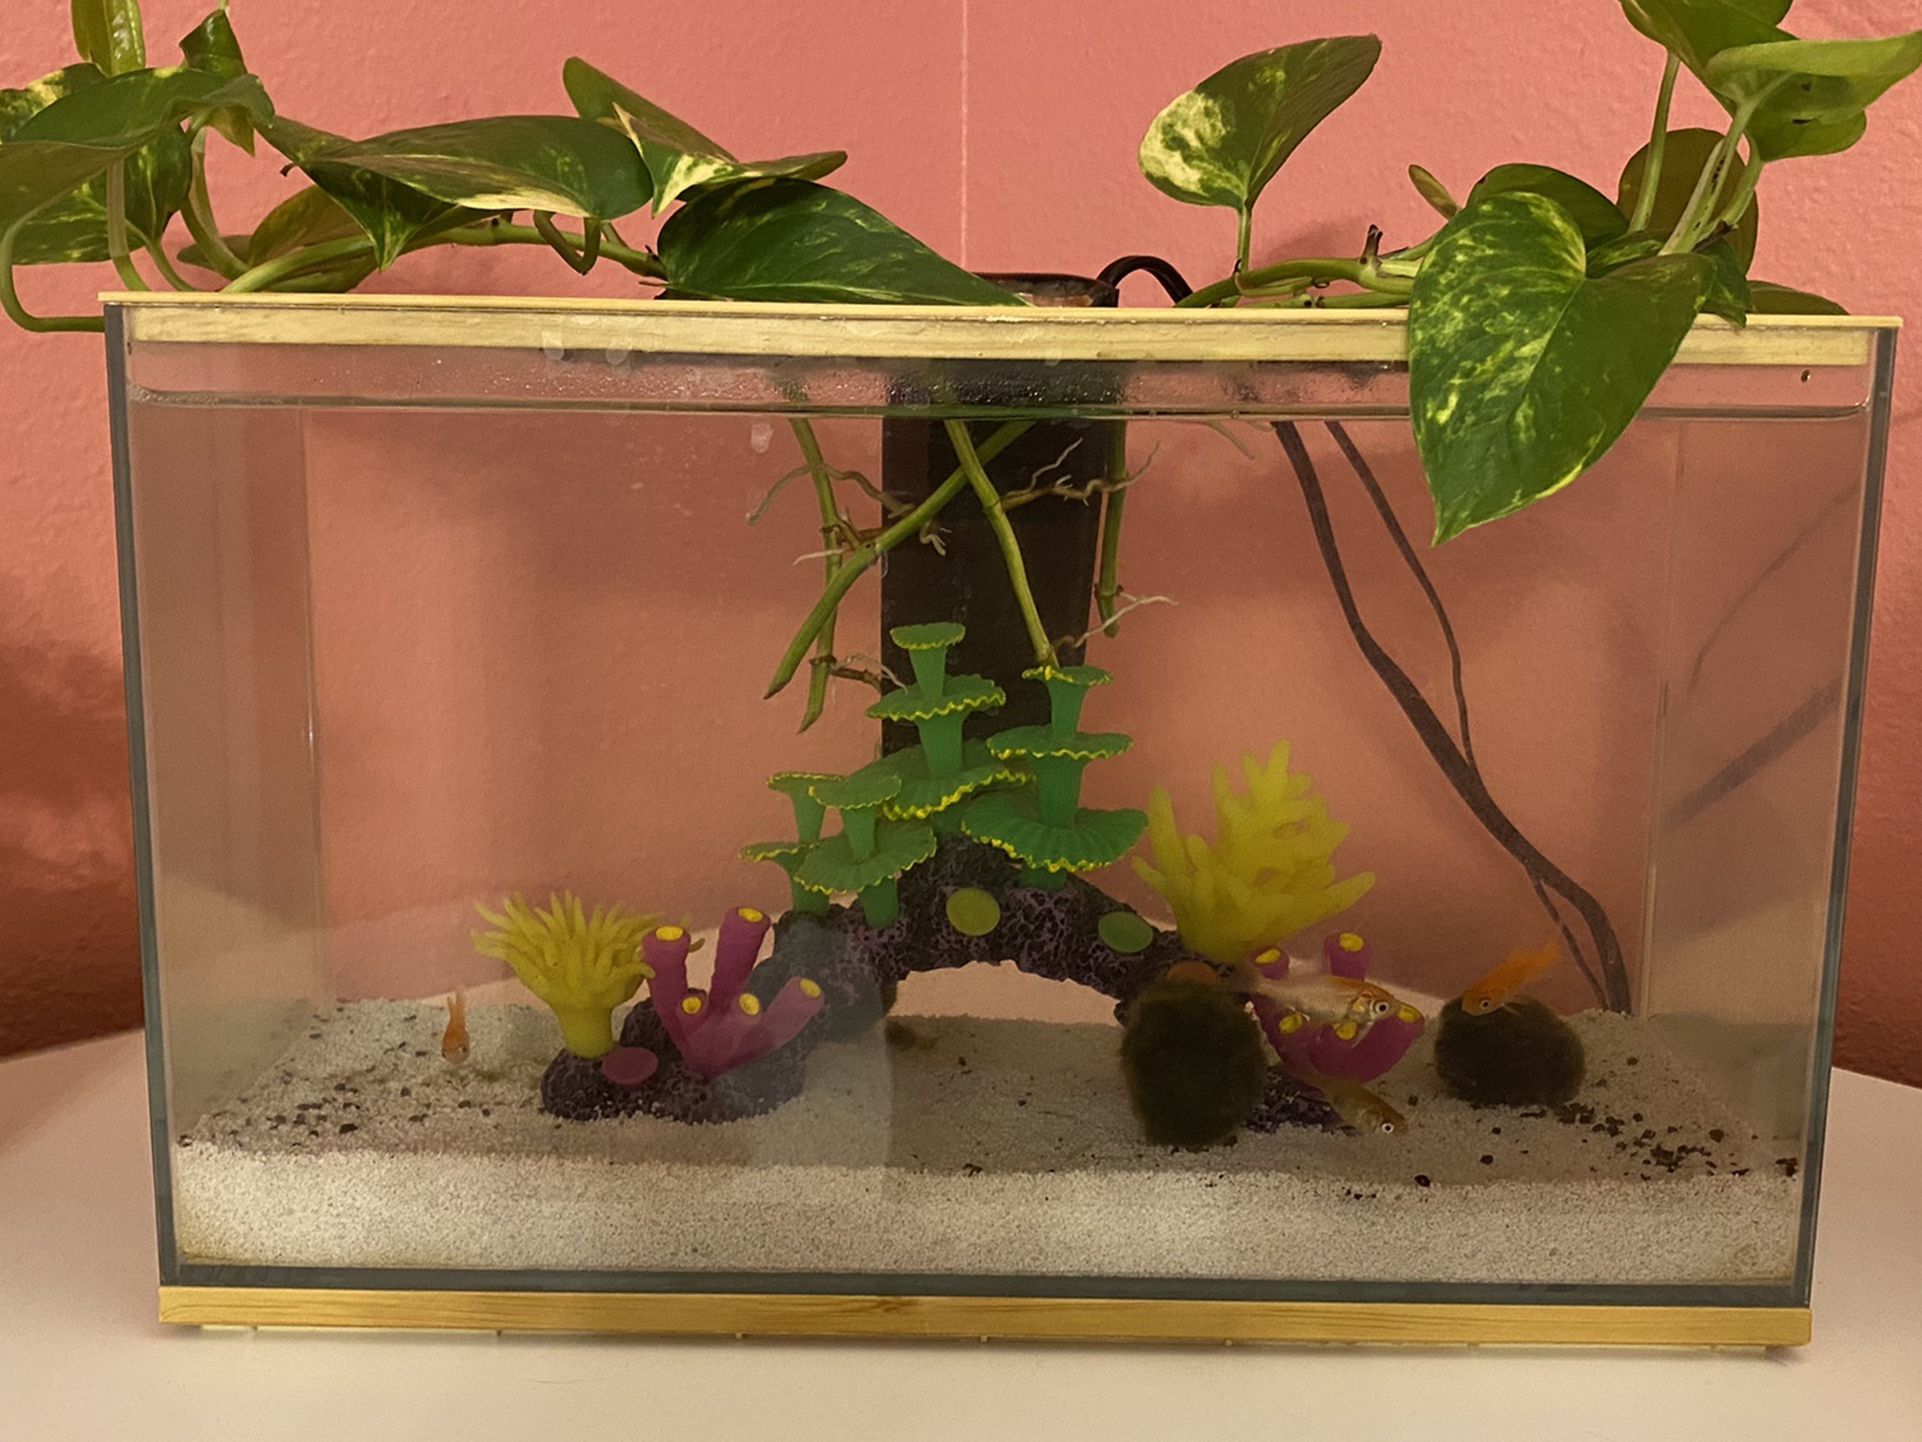 3 Gallon Aquarium With Filter And 5 Goldfish